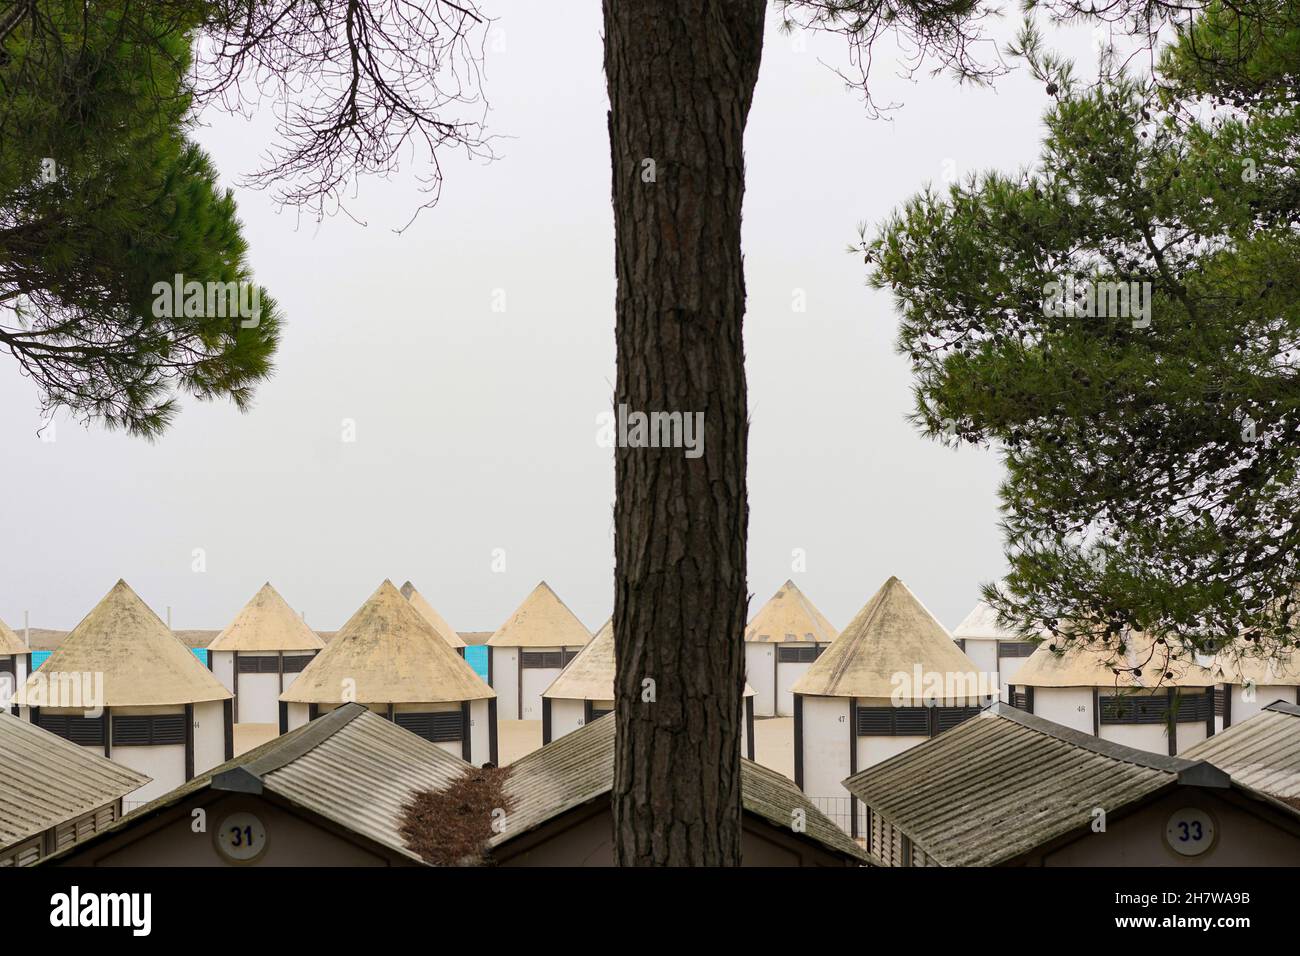 Vista de la playa de Lido, una isla en la laguna de Venecia en otoño con numerosas casas de playa para los turistas. Foto de stock